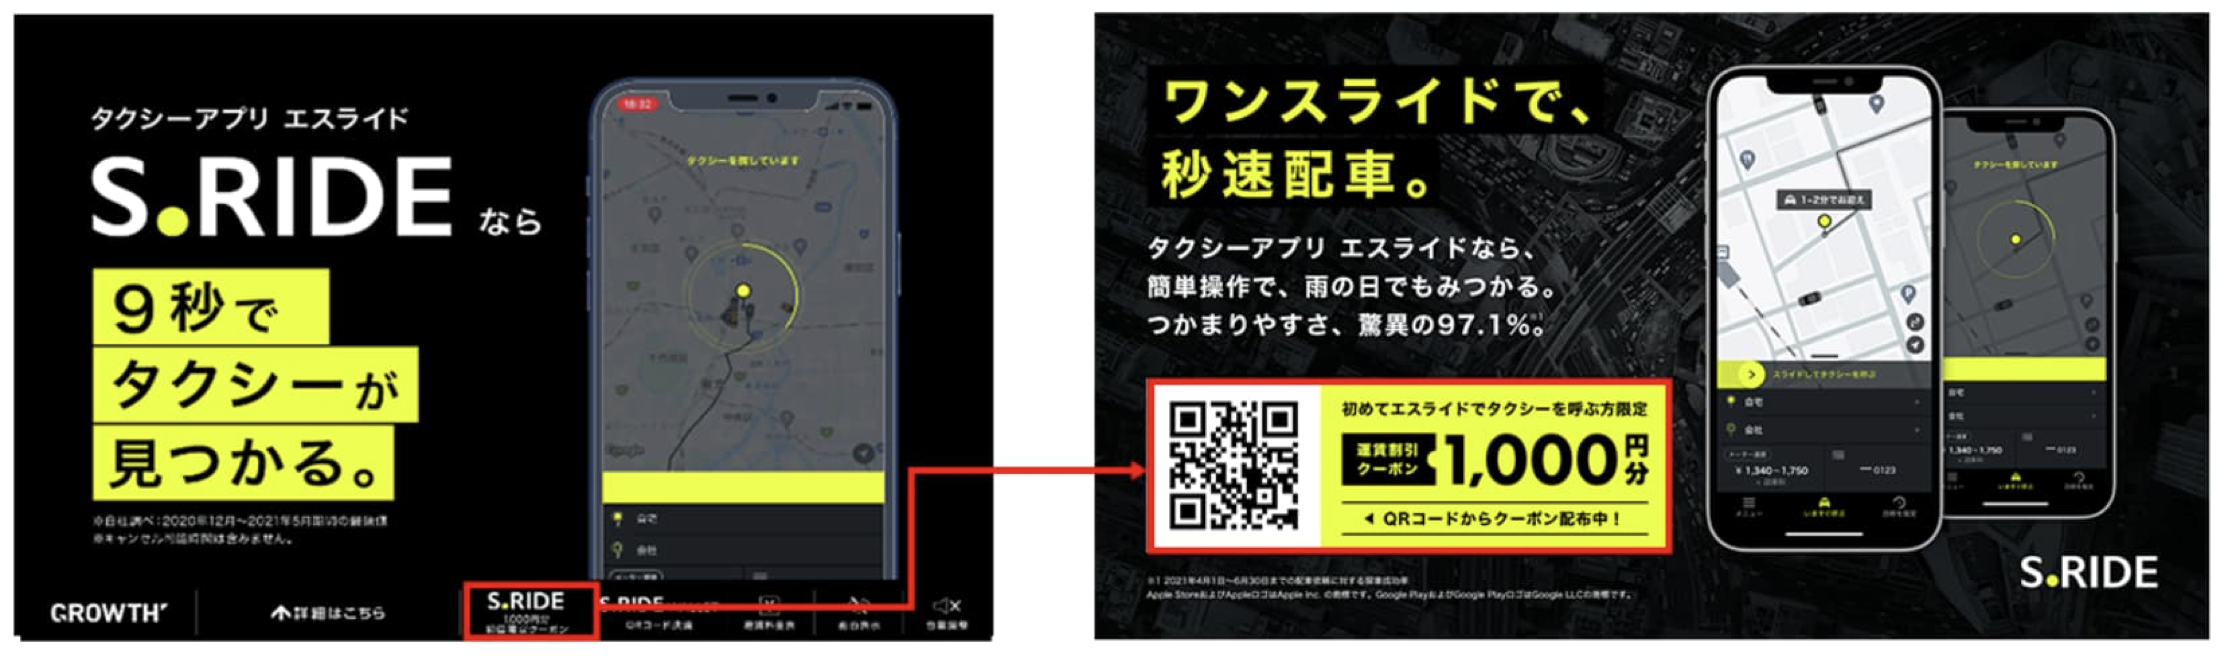 埼玉で使えるタクシーアプリとクーポン情報